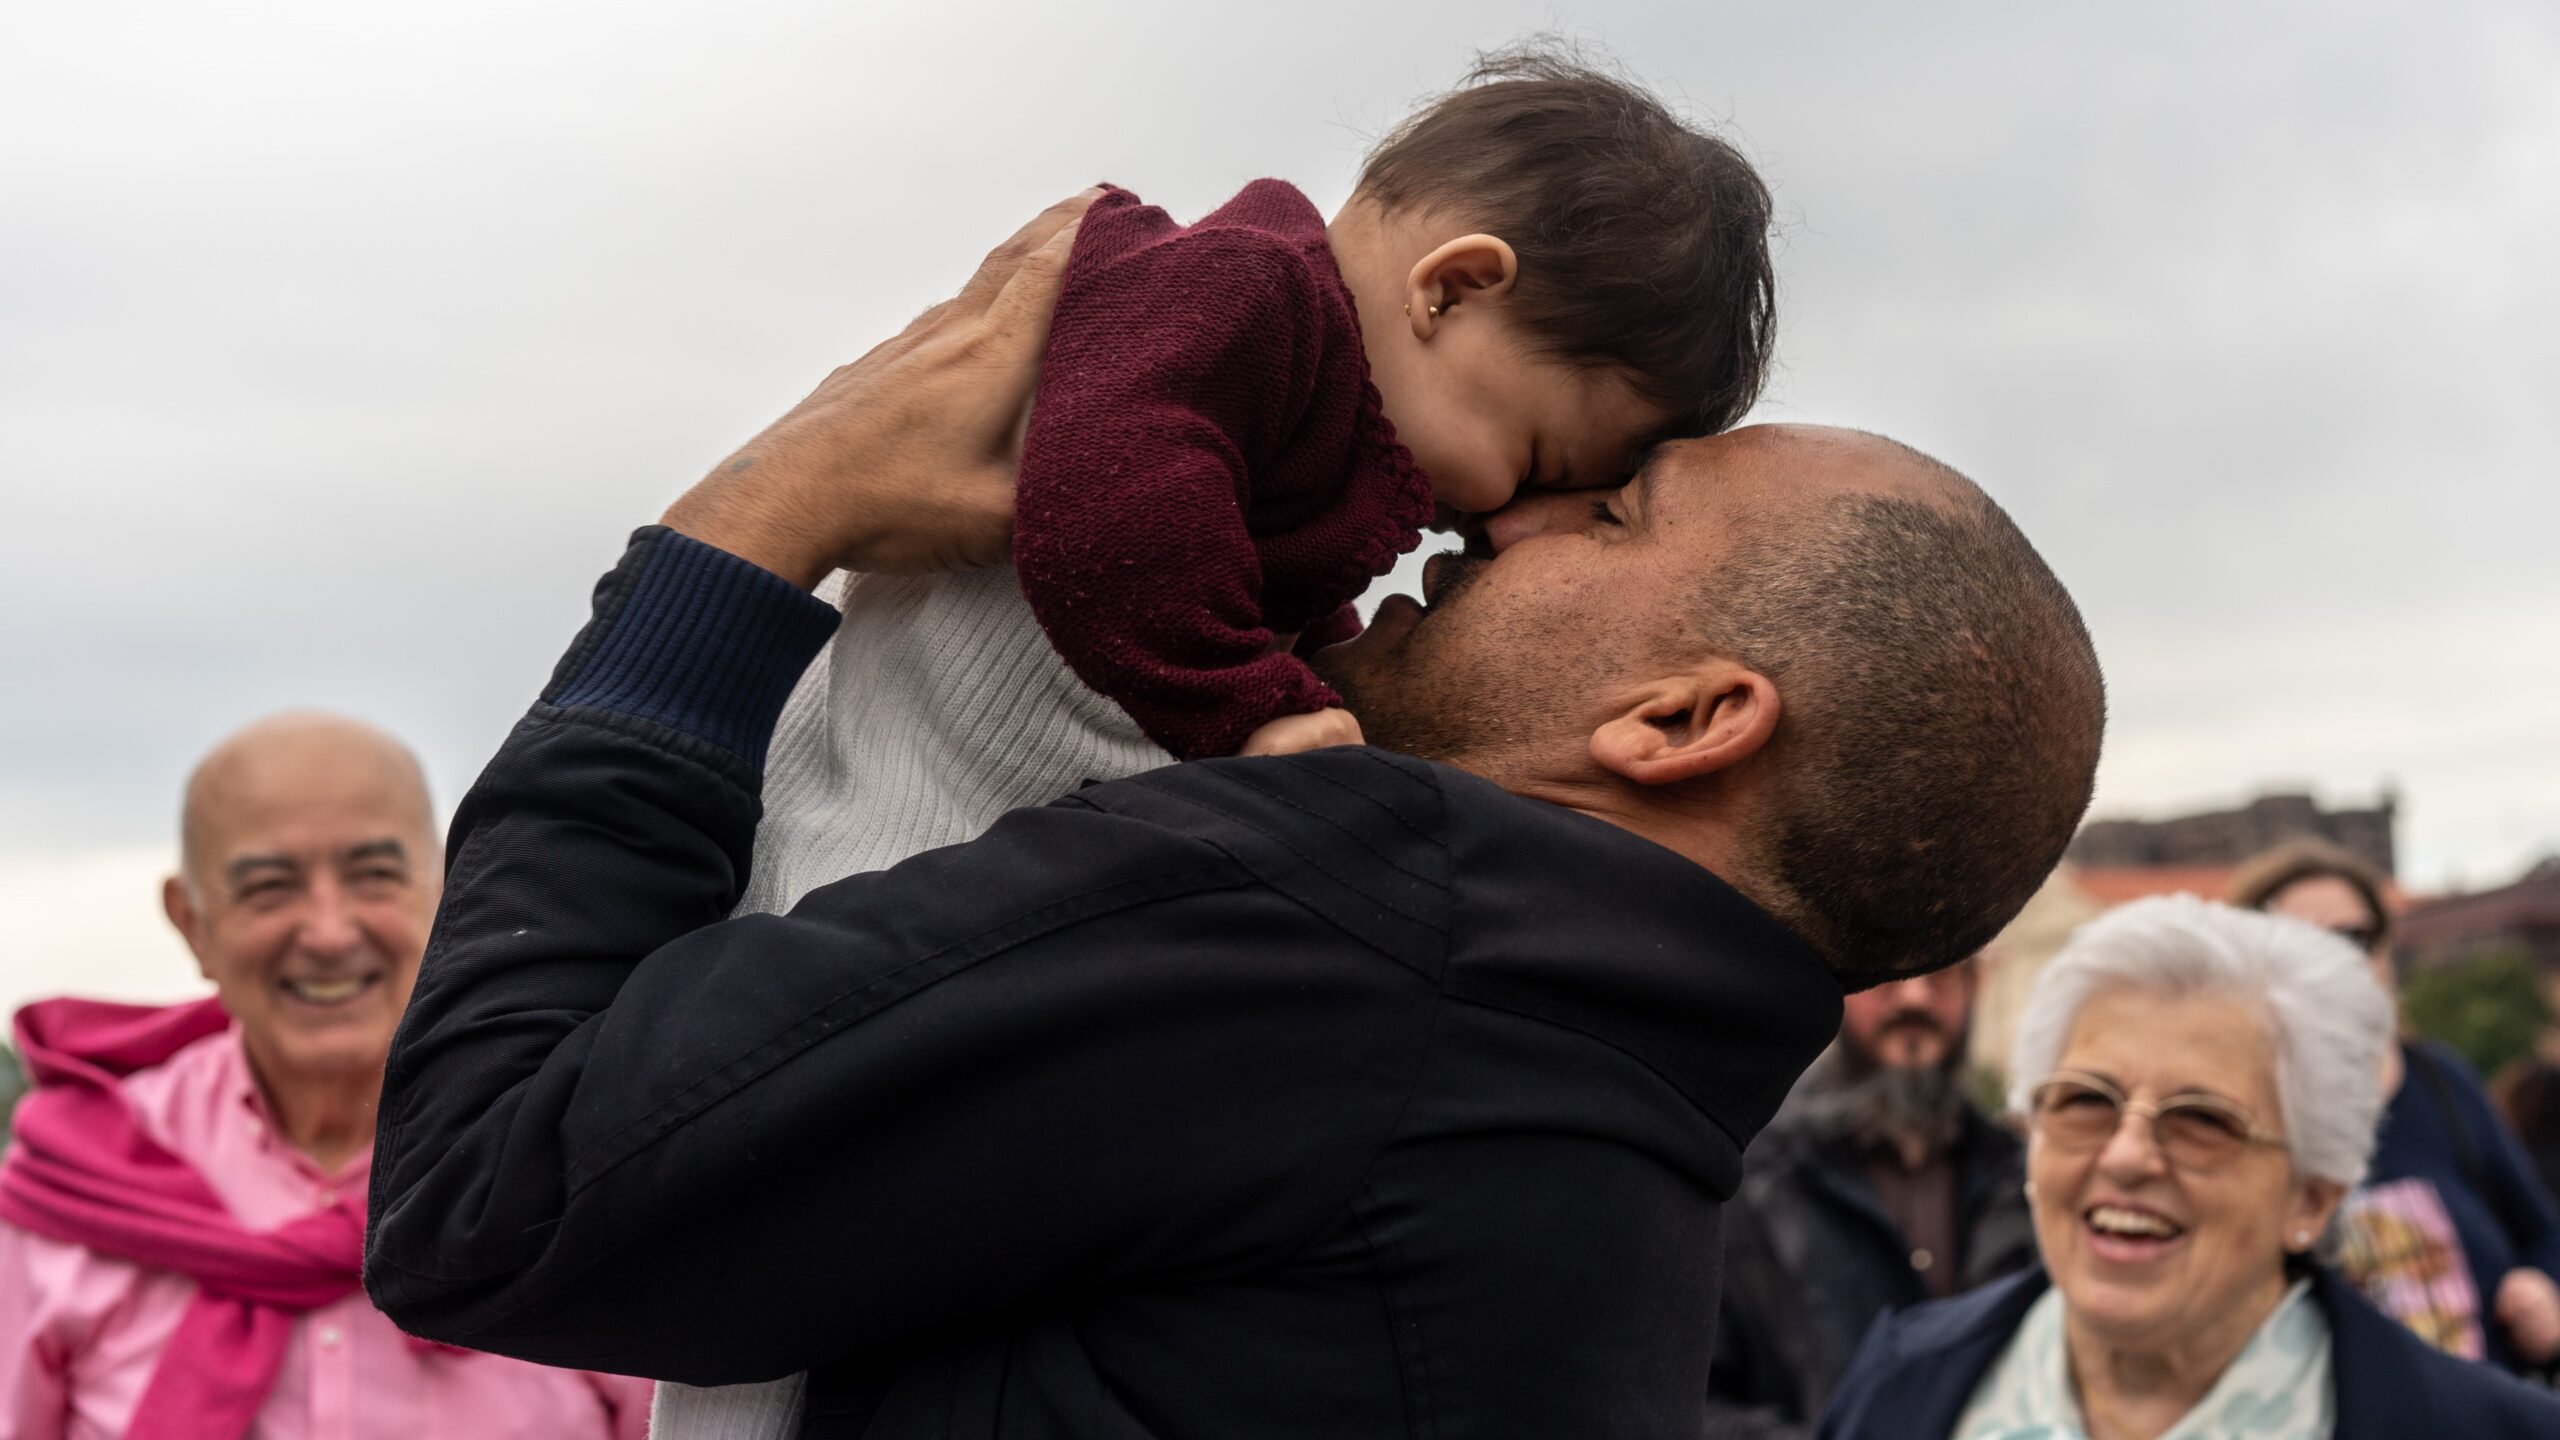 Syrische vluchteling Minwar met zijn dochtertje in Spanje, 2019. © UNHCR/Markel Redondo